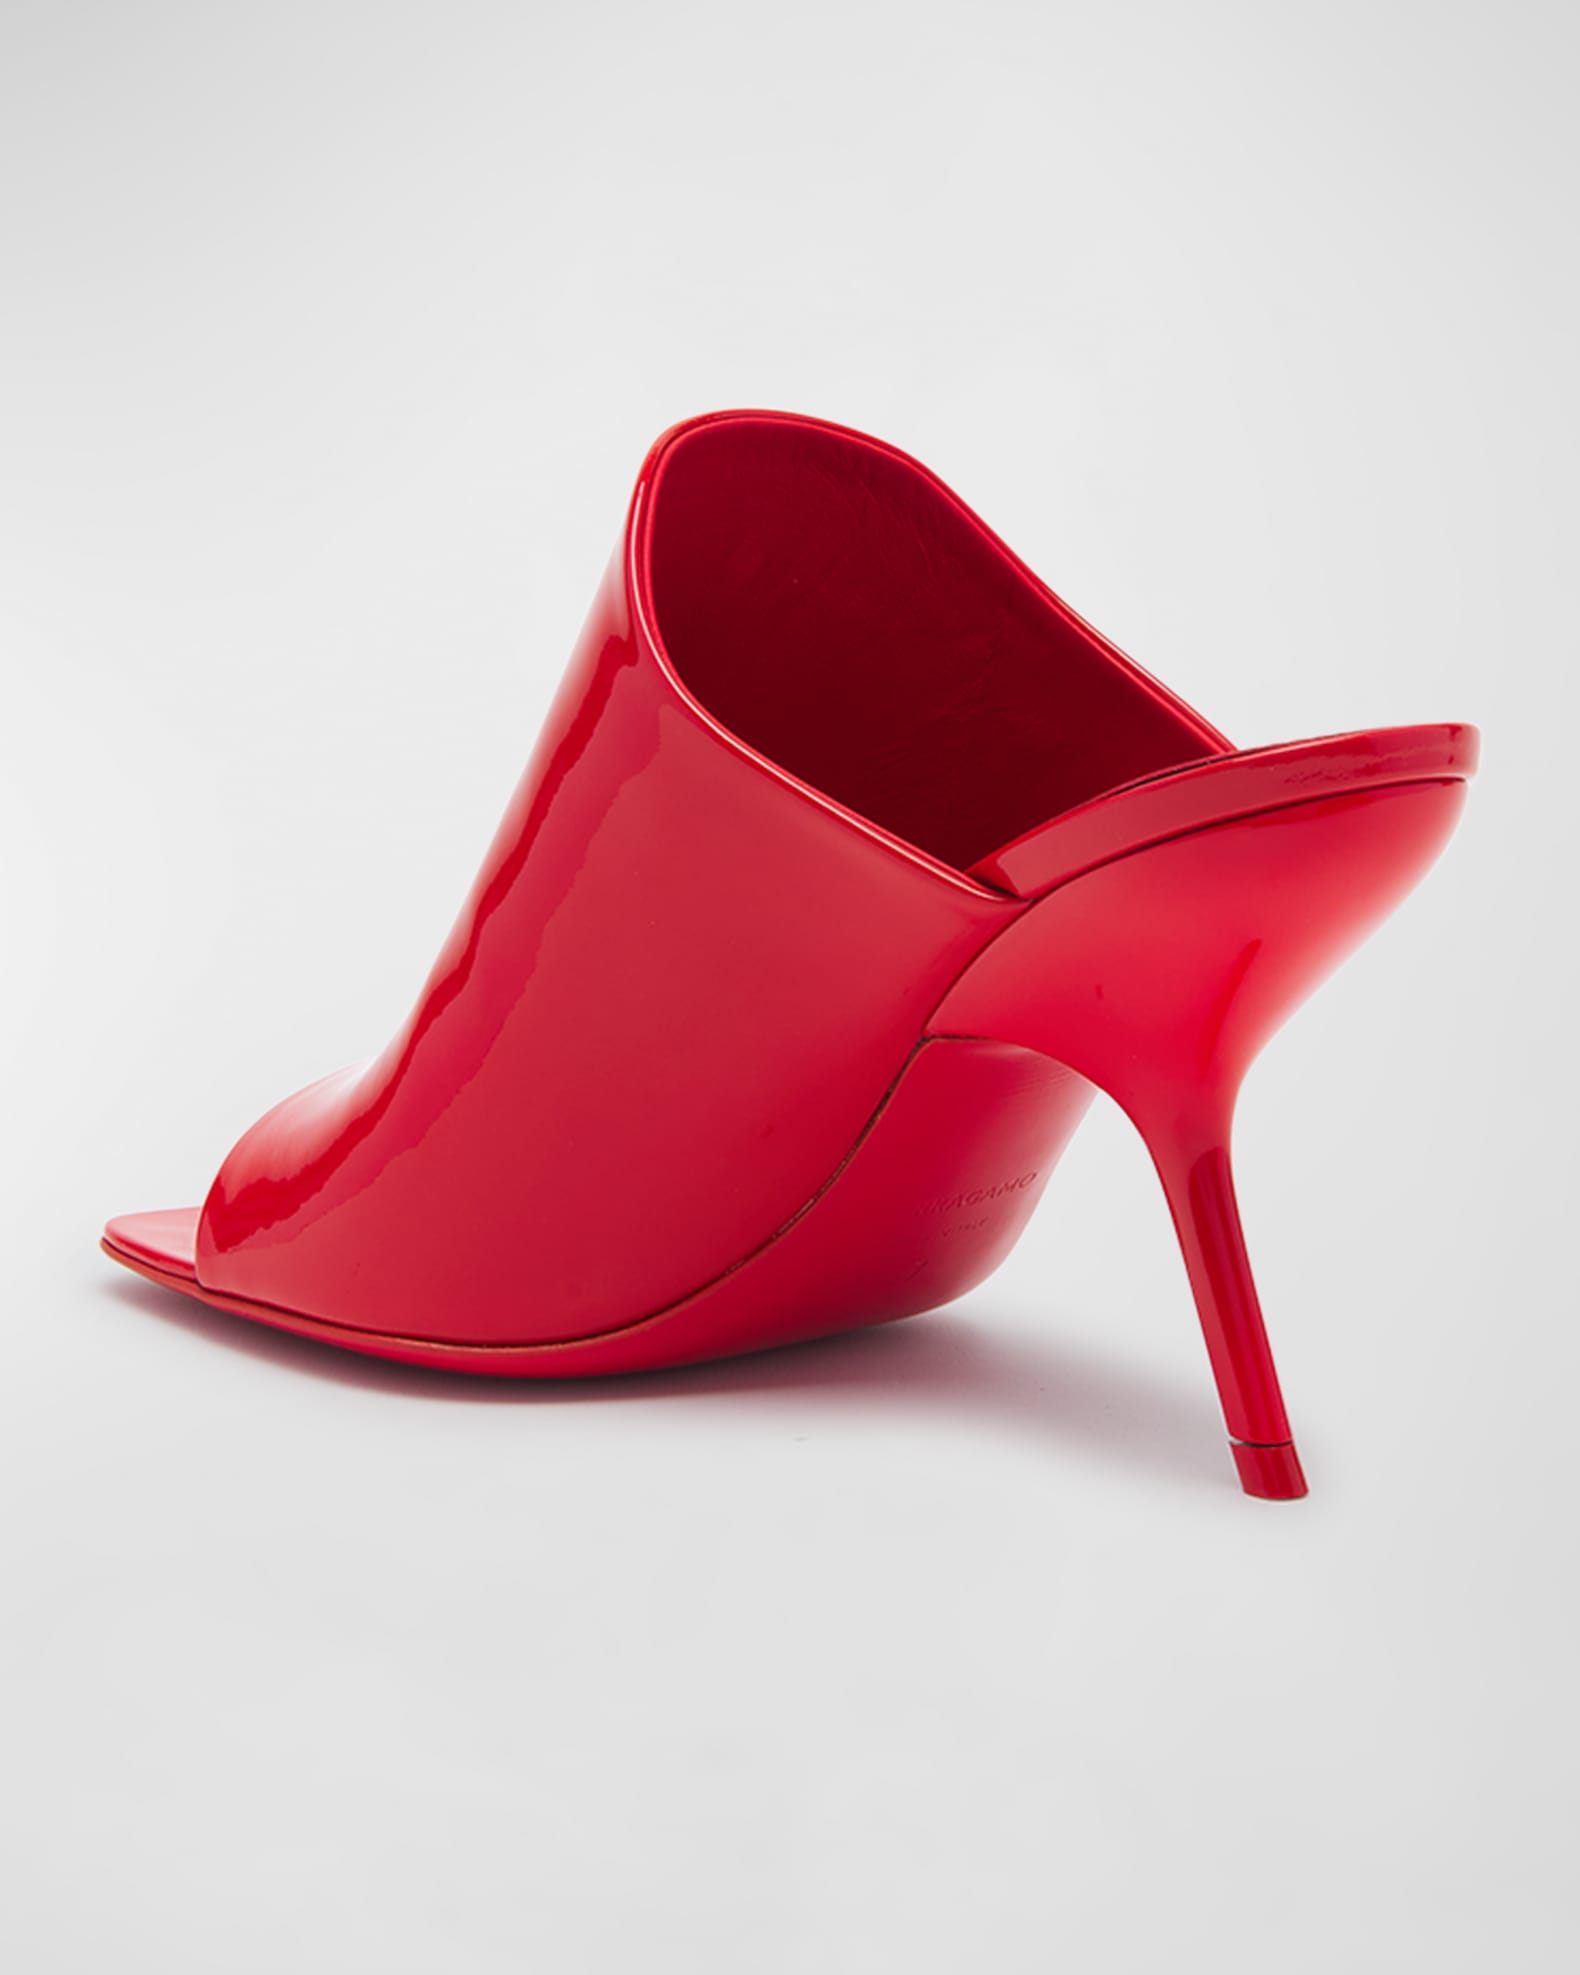 Ferragamo Era Patent Stiletto Mule Sandals | Neiman Marcus